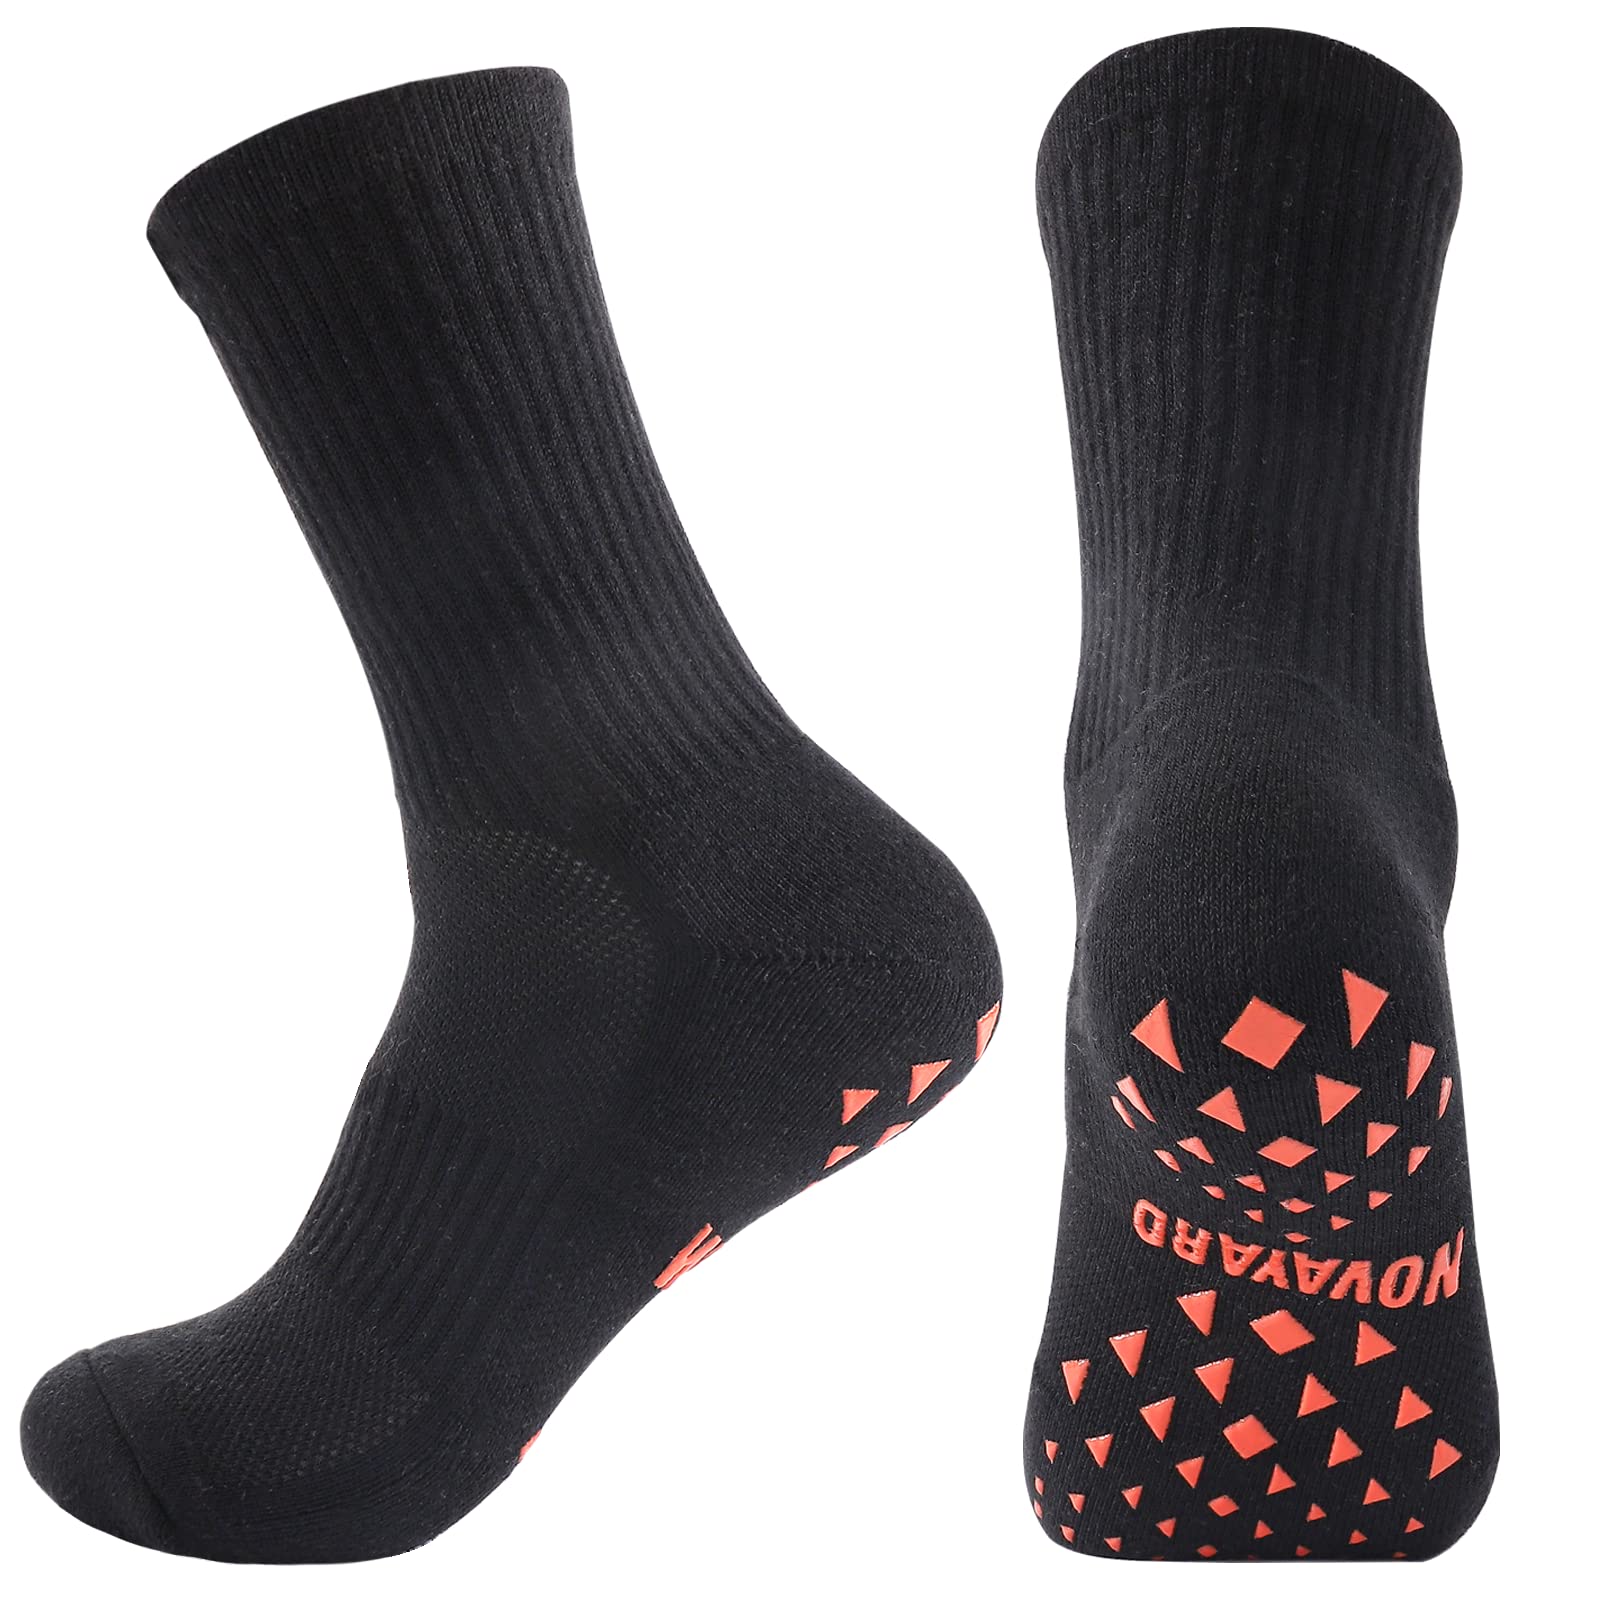 Non Slip Sports Grip Socks For Men Women